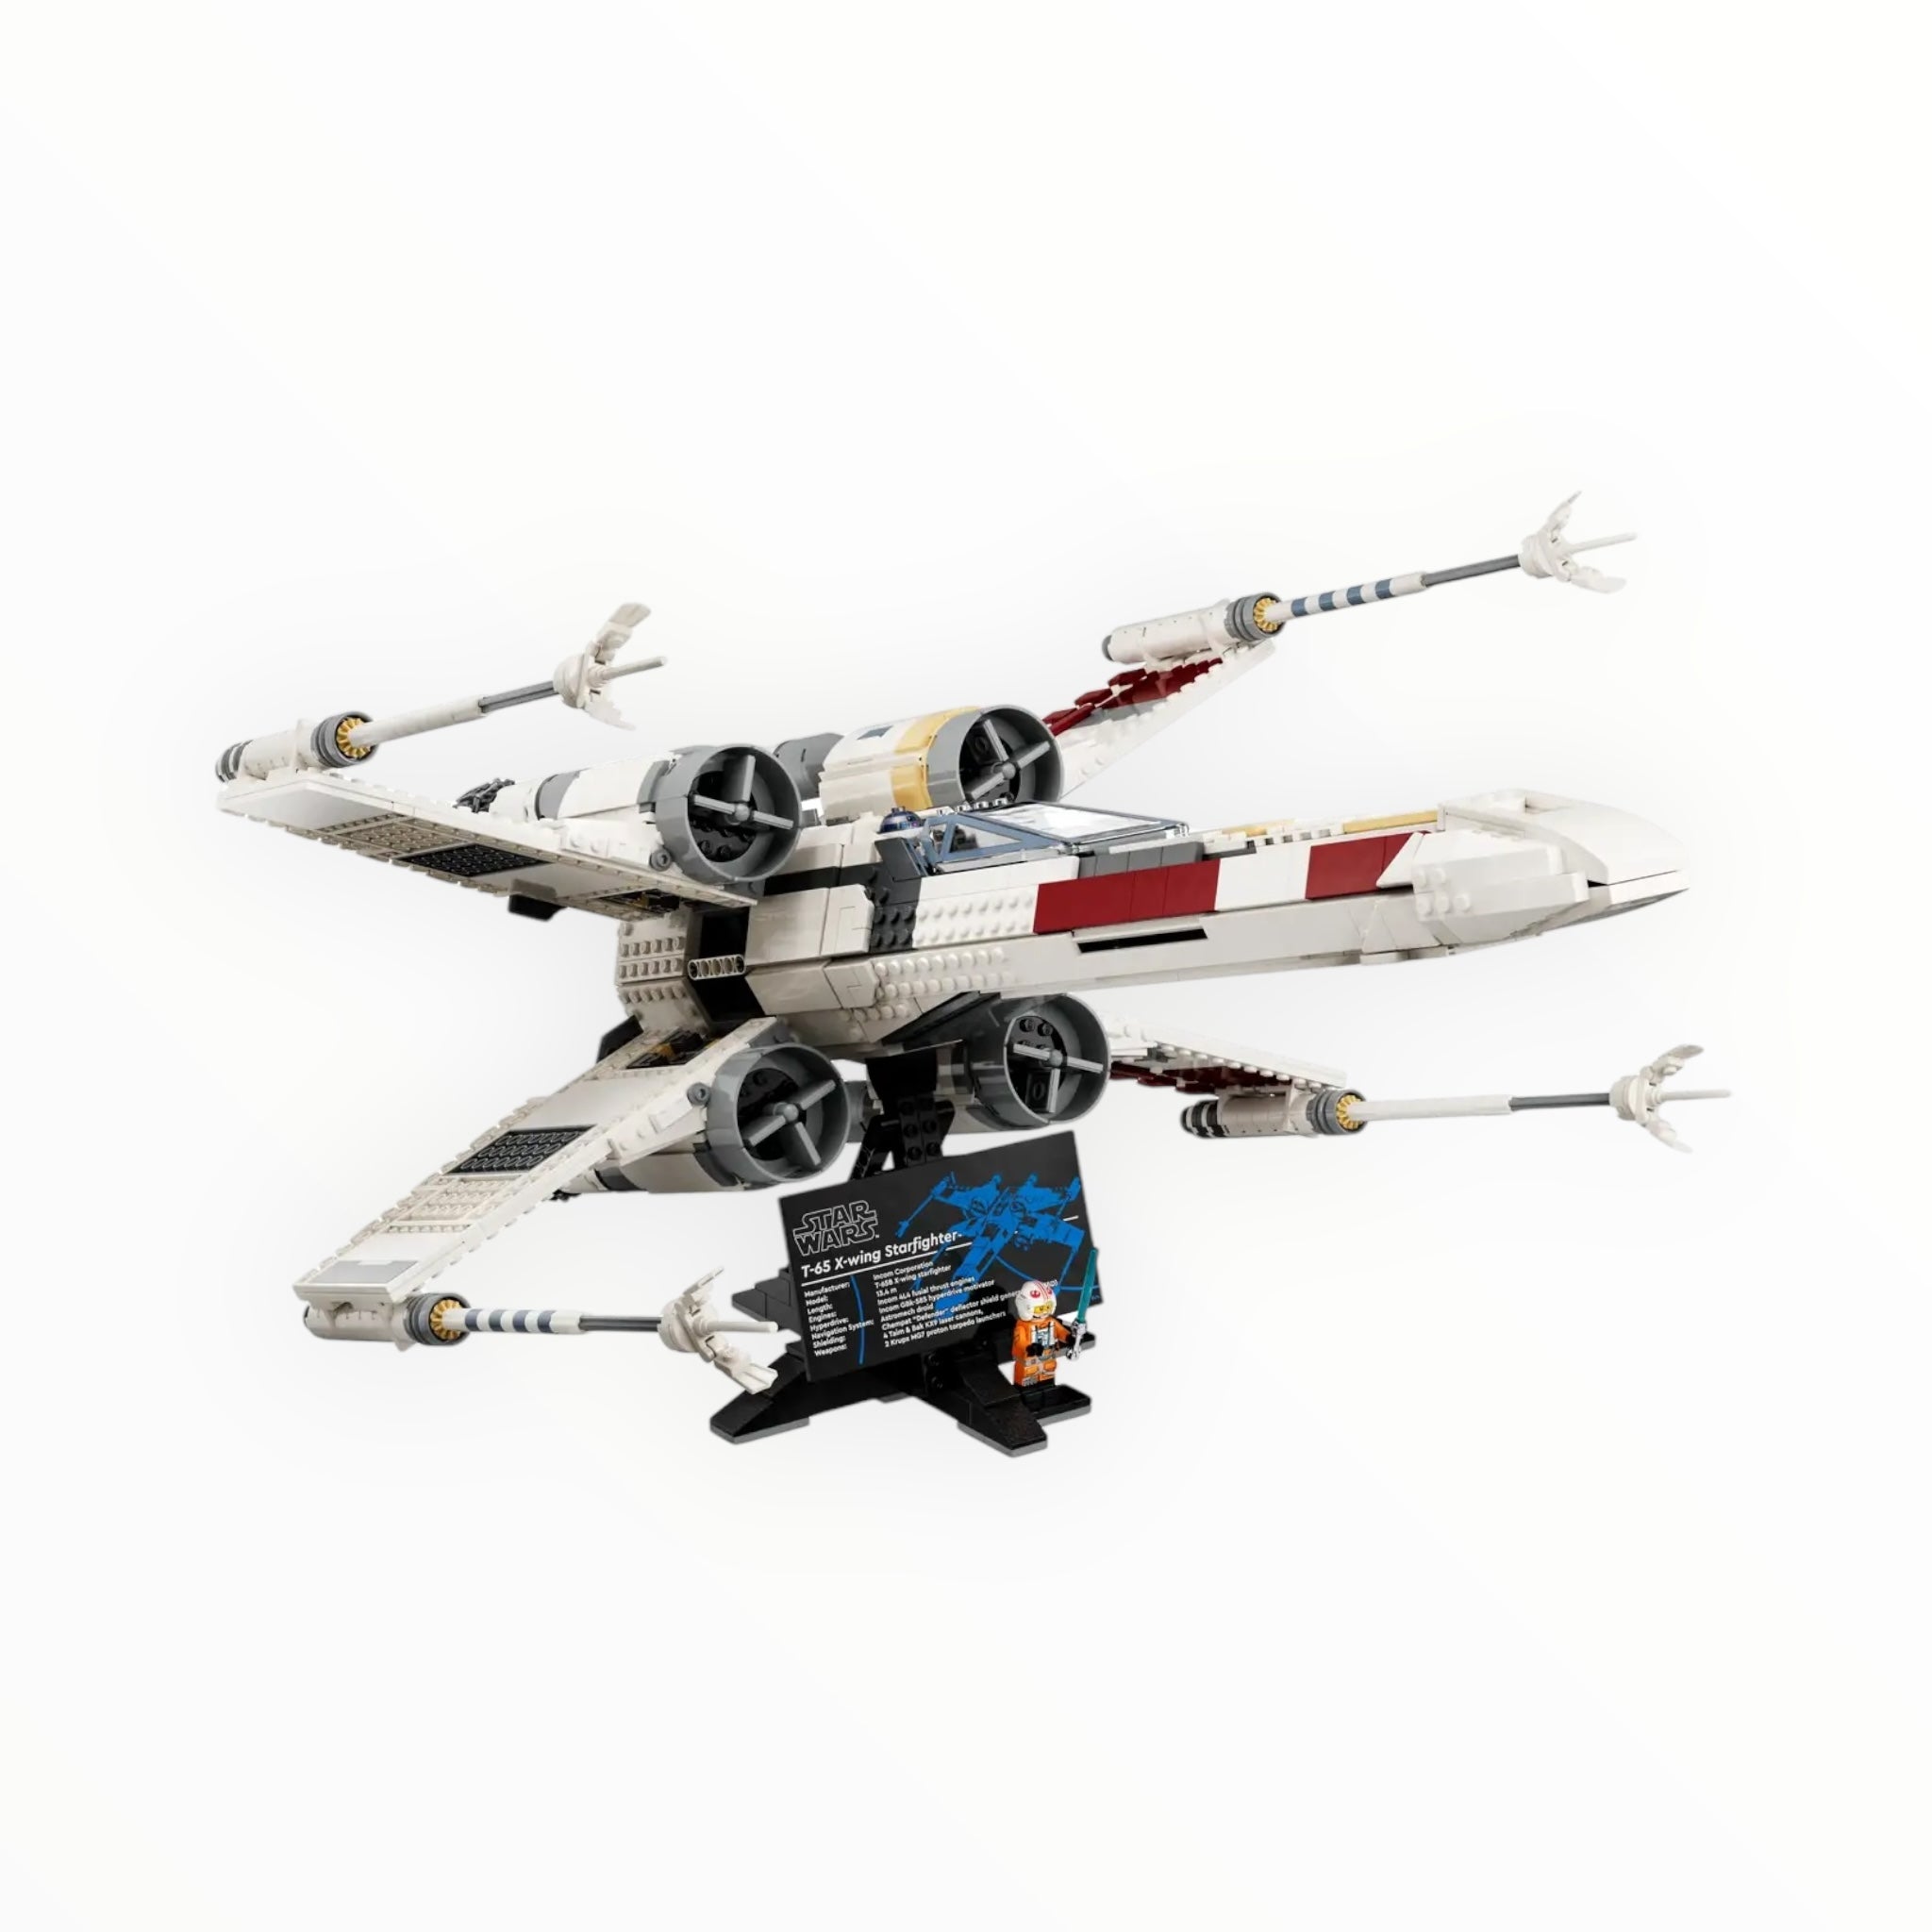 75355 Star Wars X-Wing Starfighter UCS